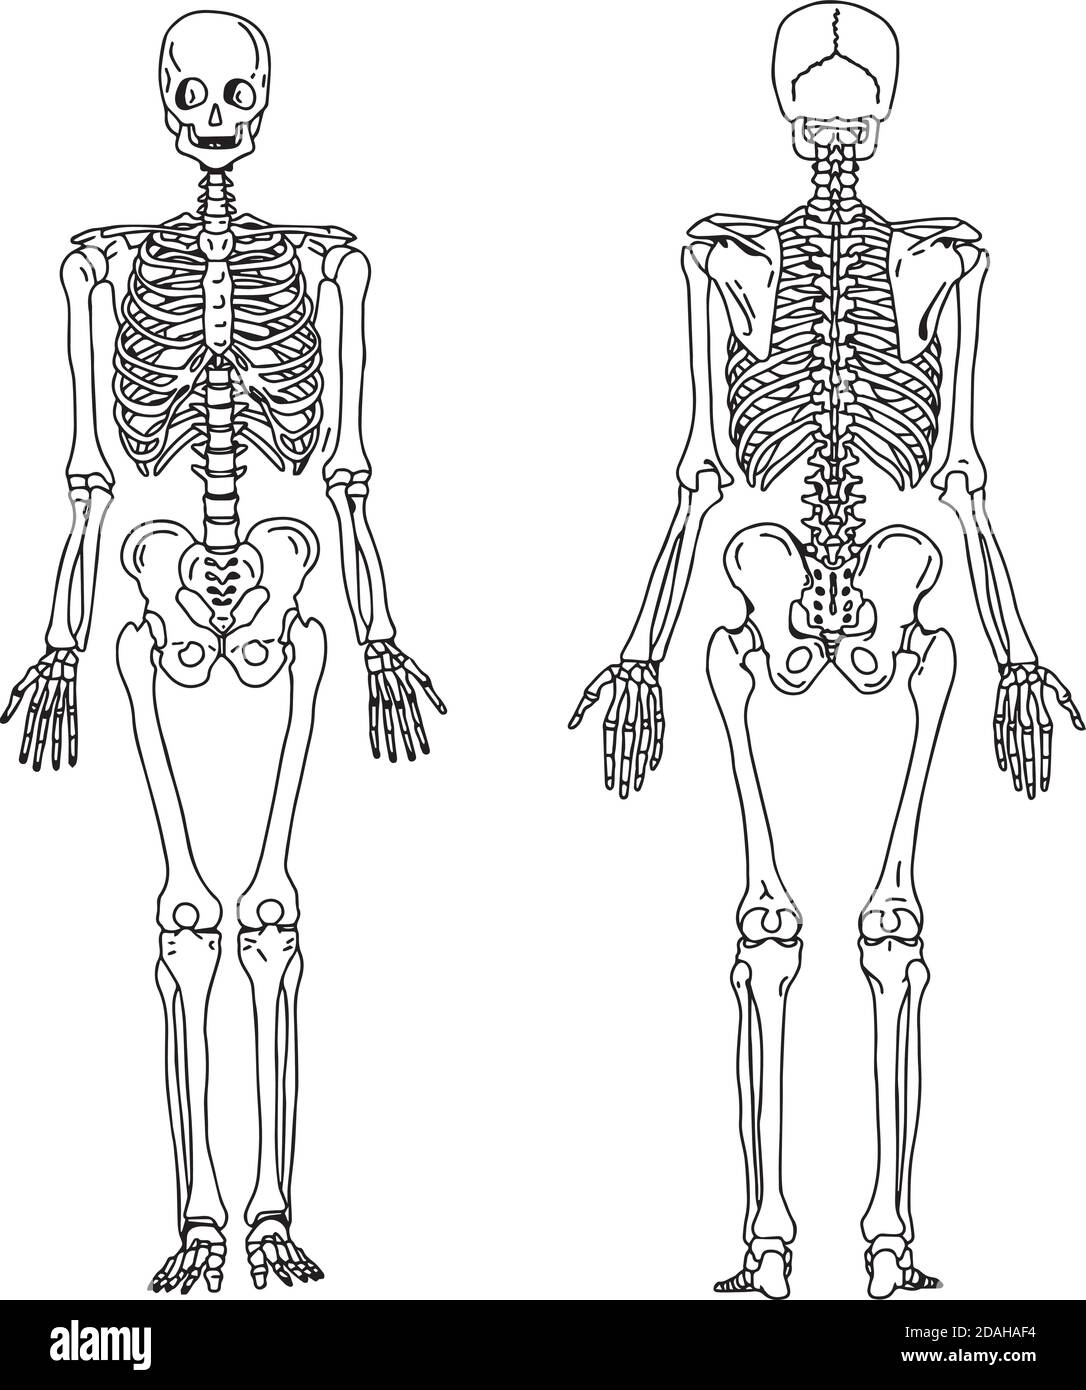 illustrazione la mano vettoriale disegna i doodles dello scheletro umano dalla vista posteriore e anteriore, anatomia del sistema osseo umano Illustrazione Vettoriale